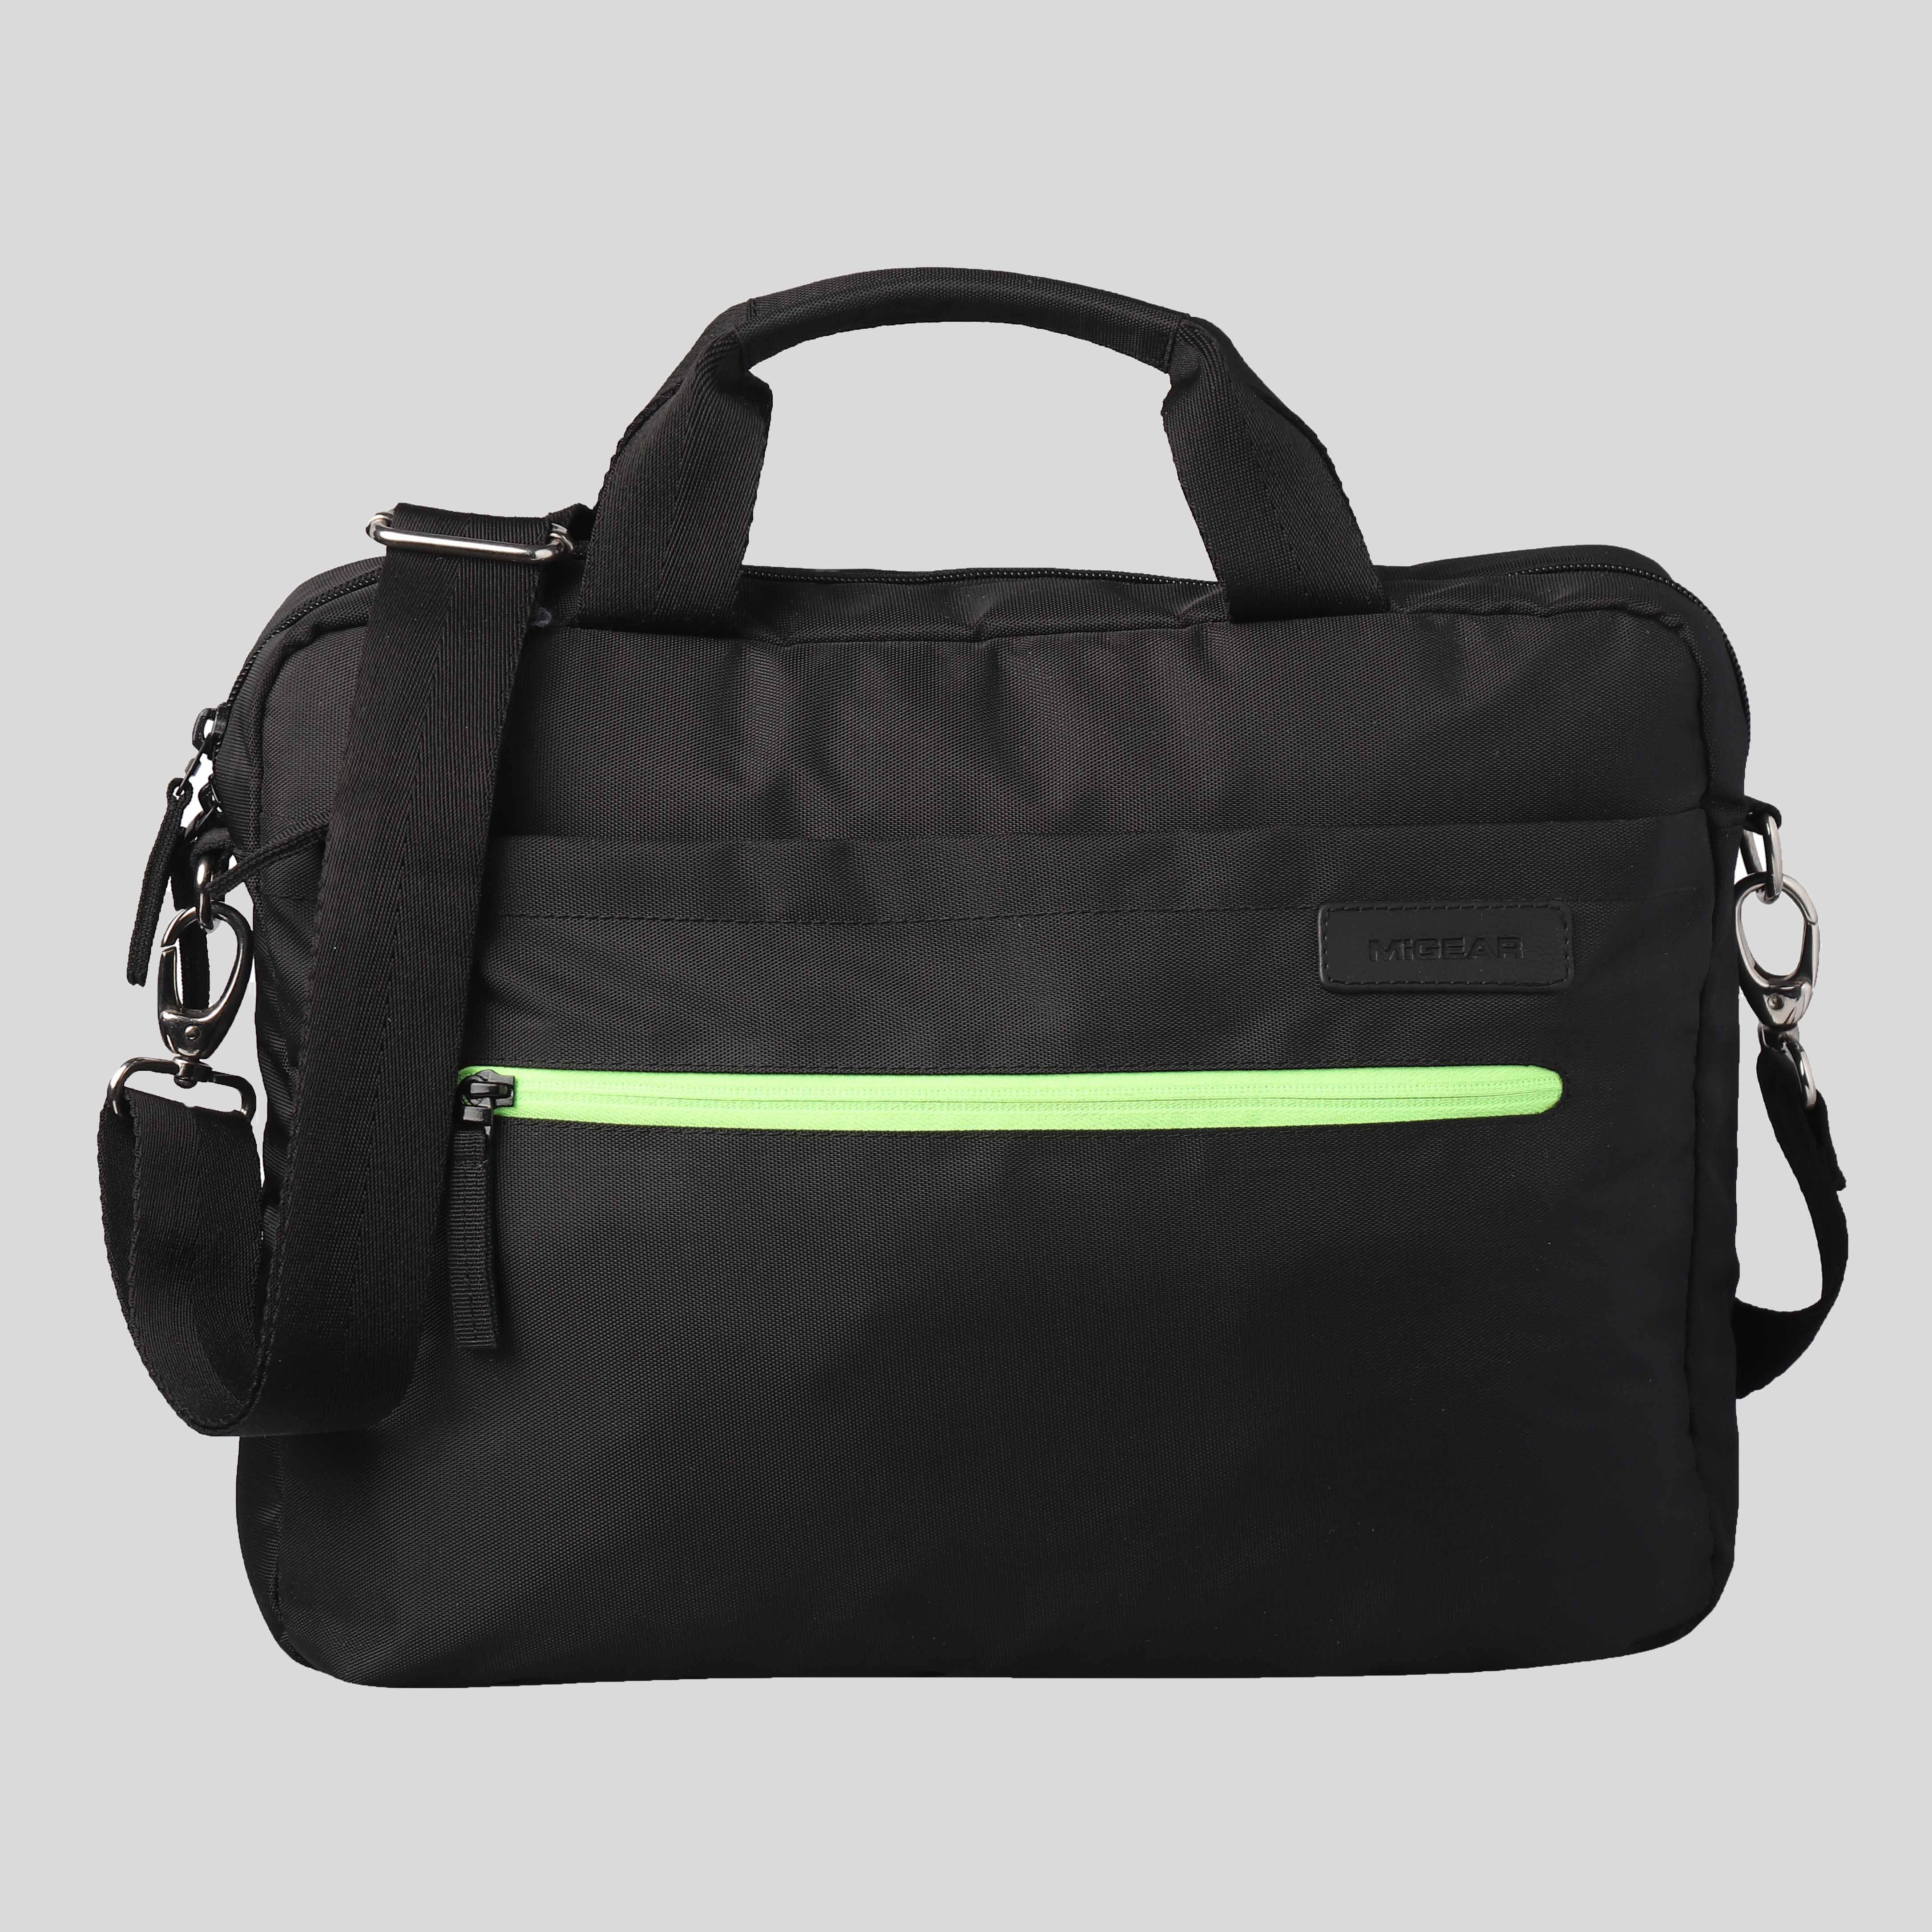 NeonVerse Messenger Laptop Bag